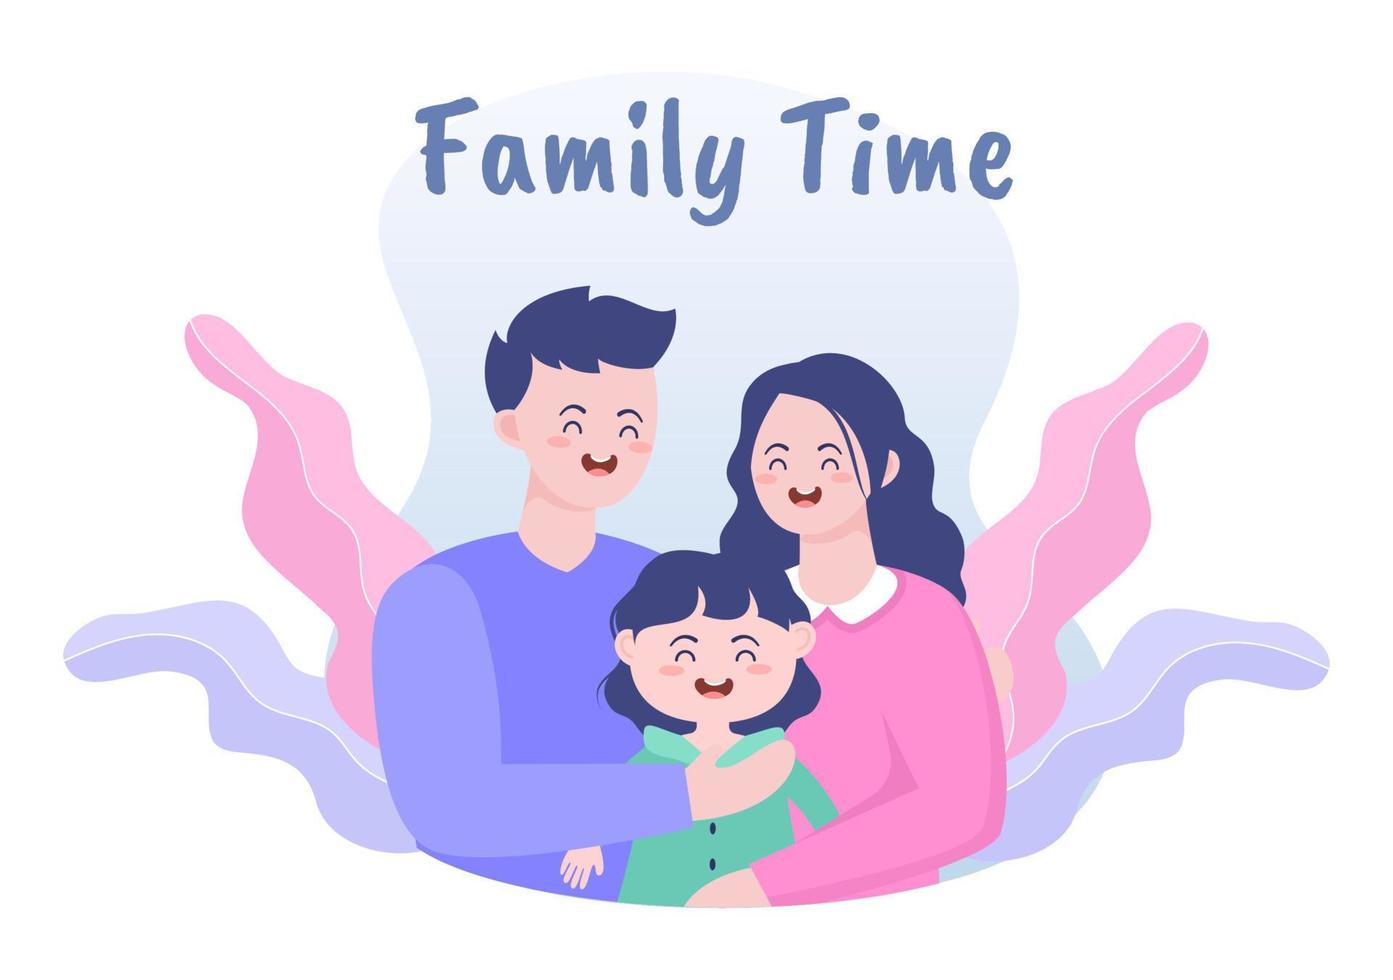 familjetid med glada föräldrar och barn som spenderar tid tillsammans hemma och gör olika avkopplande aktiviteter i tecknad platt illustration för affisch eller bakgrund vektor